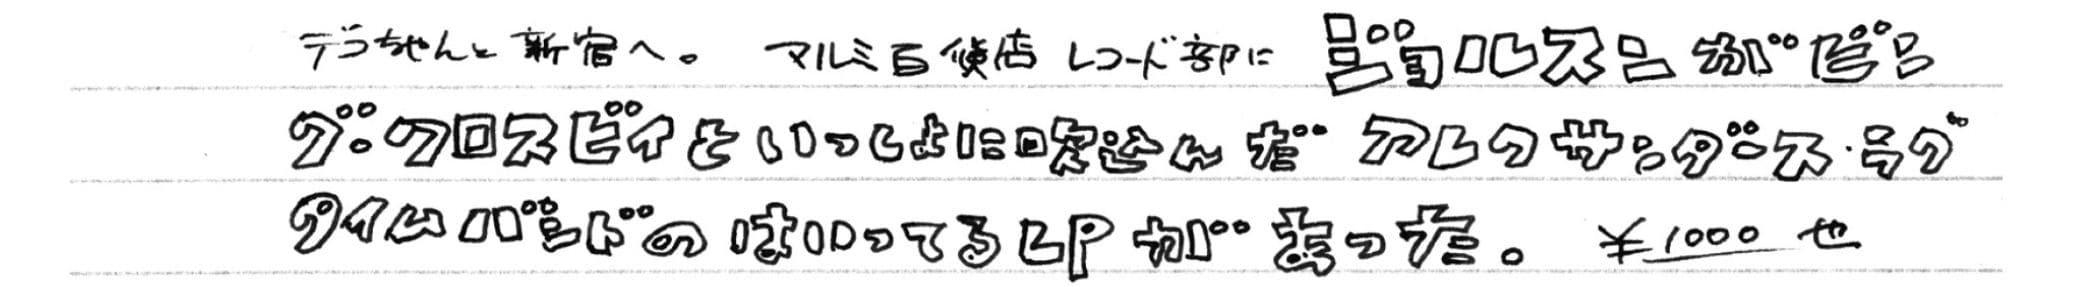 1954年3月18日　俳優兼歌手のアル・ジョルスンをこよなく愛した和田さんは、この頃からジョルスンのレコード収集に目覚めてゆく。LPが手に入らない日は「ムカムカする。なにも手がつかない」と素直な気持ちを綴った。　©文藝春秋